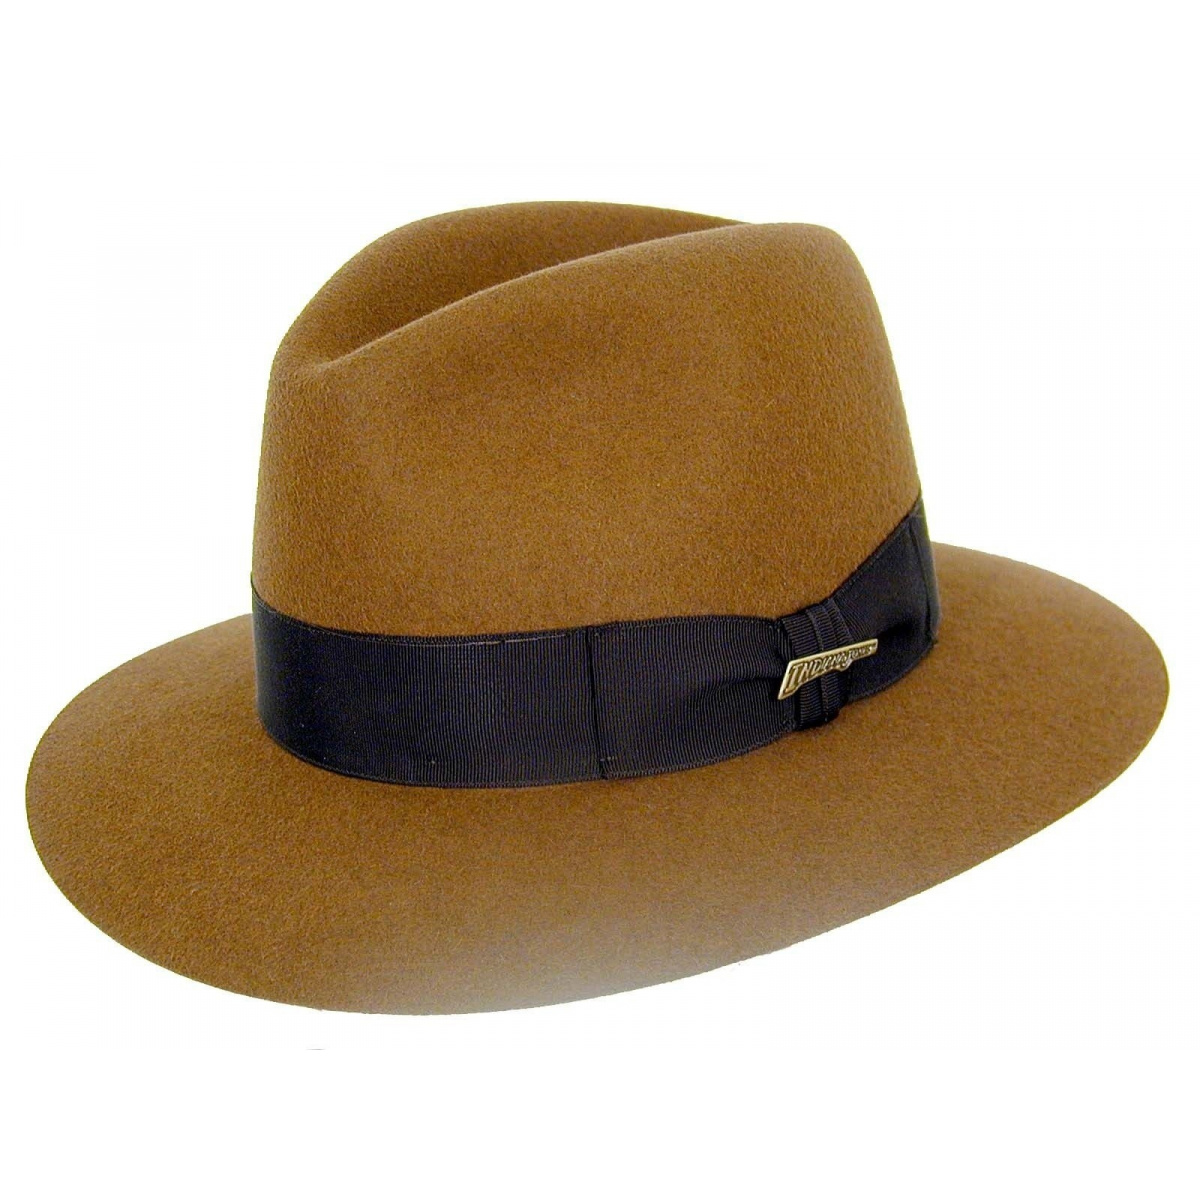 Le chapeau mythique d'Indiana Jones s'arrache à un prix record aux